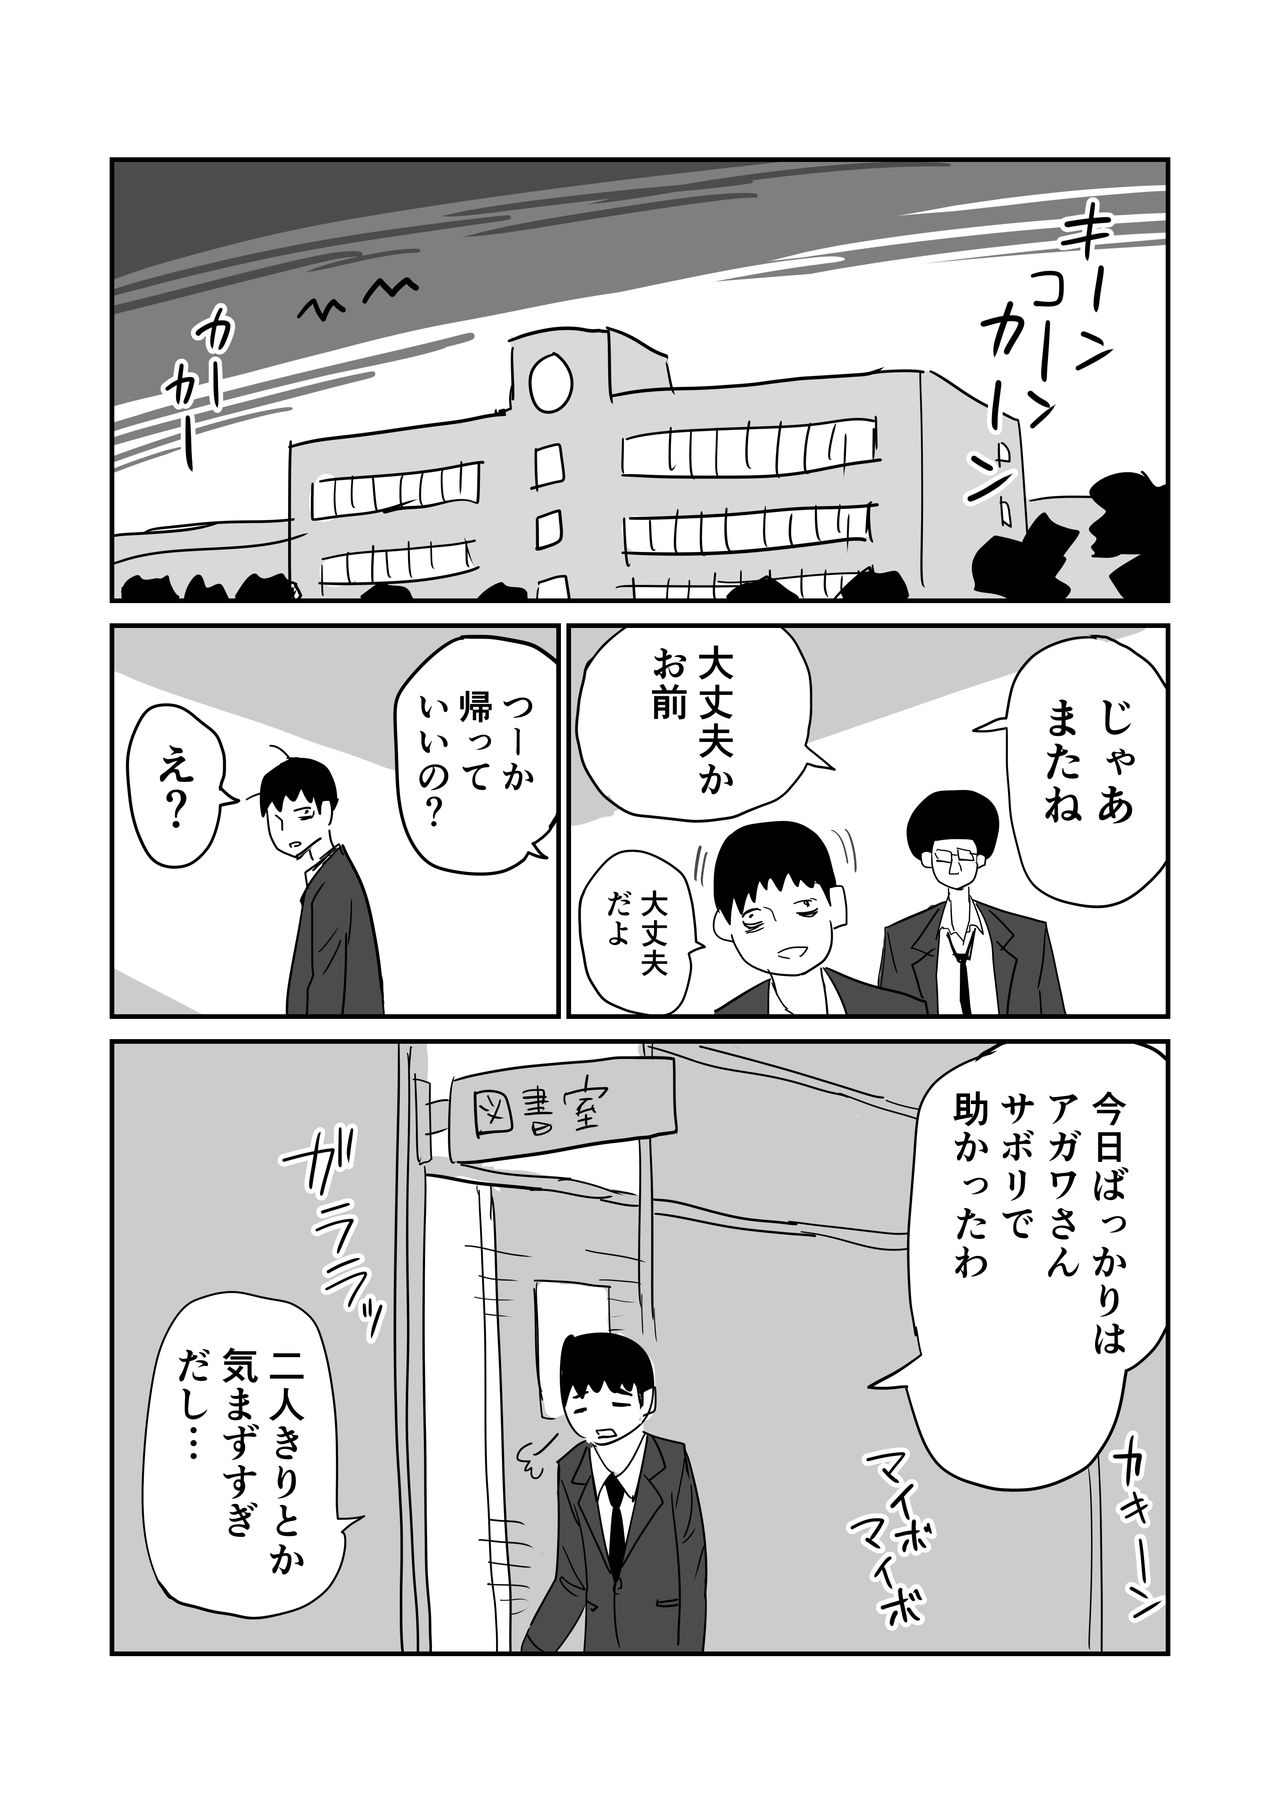 [牛牛牛] 女子高生のエロ漫画 page 21 full